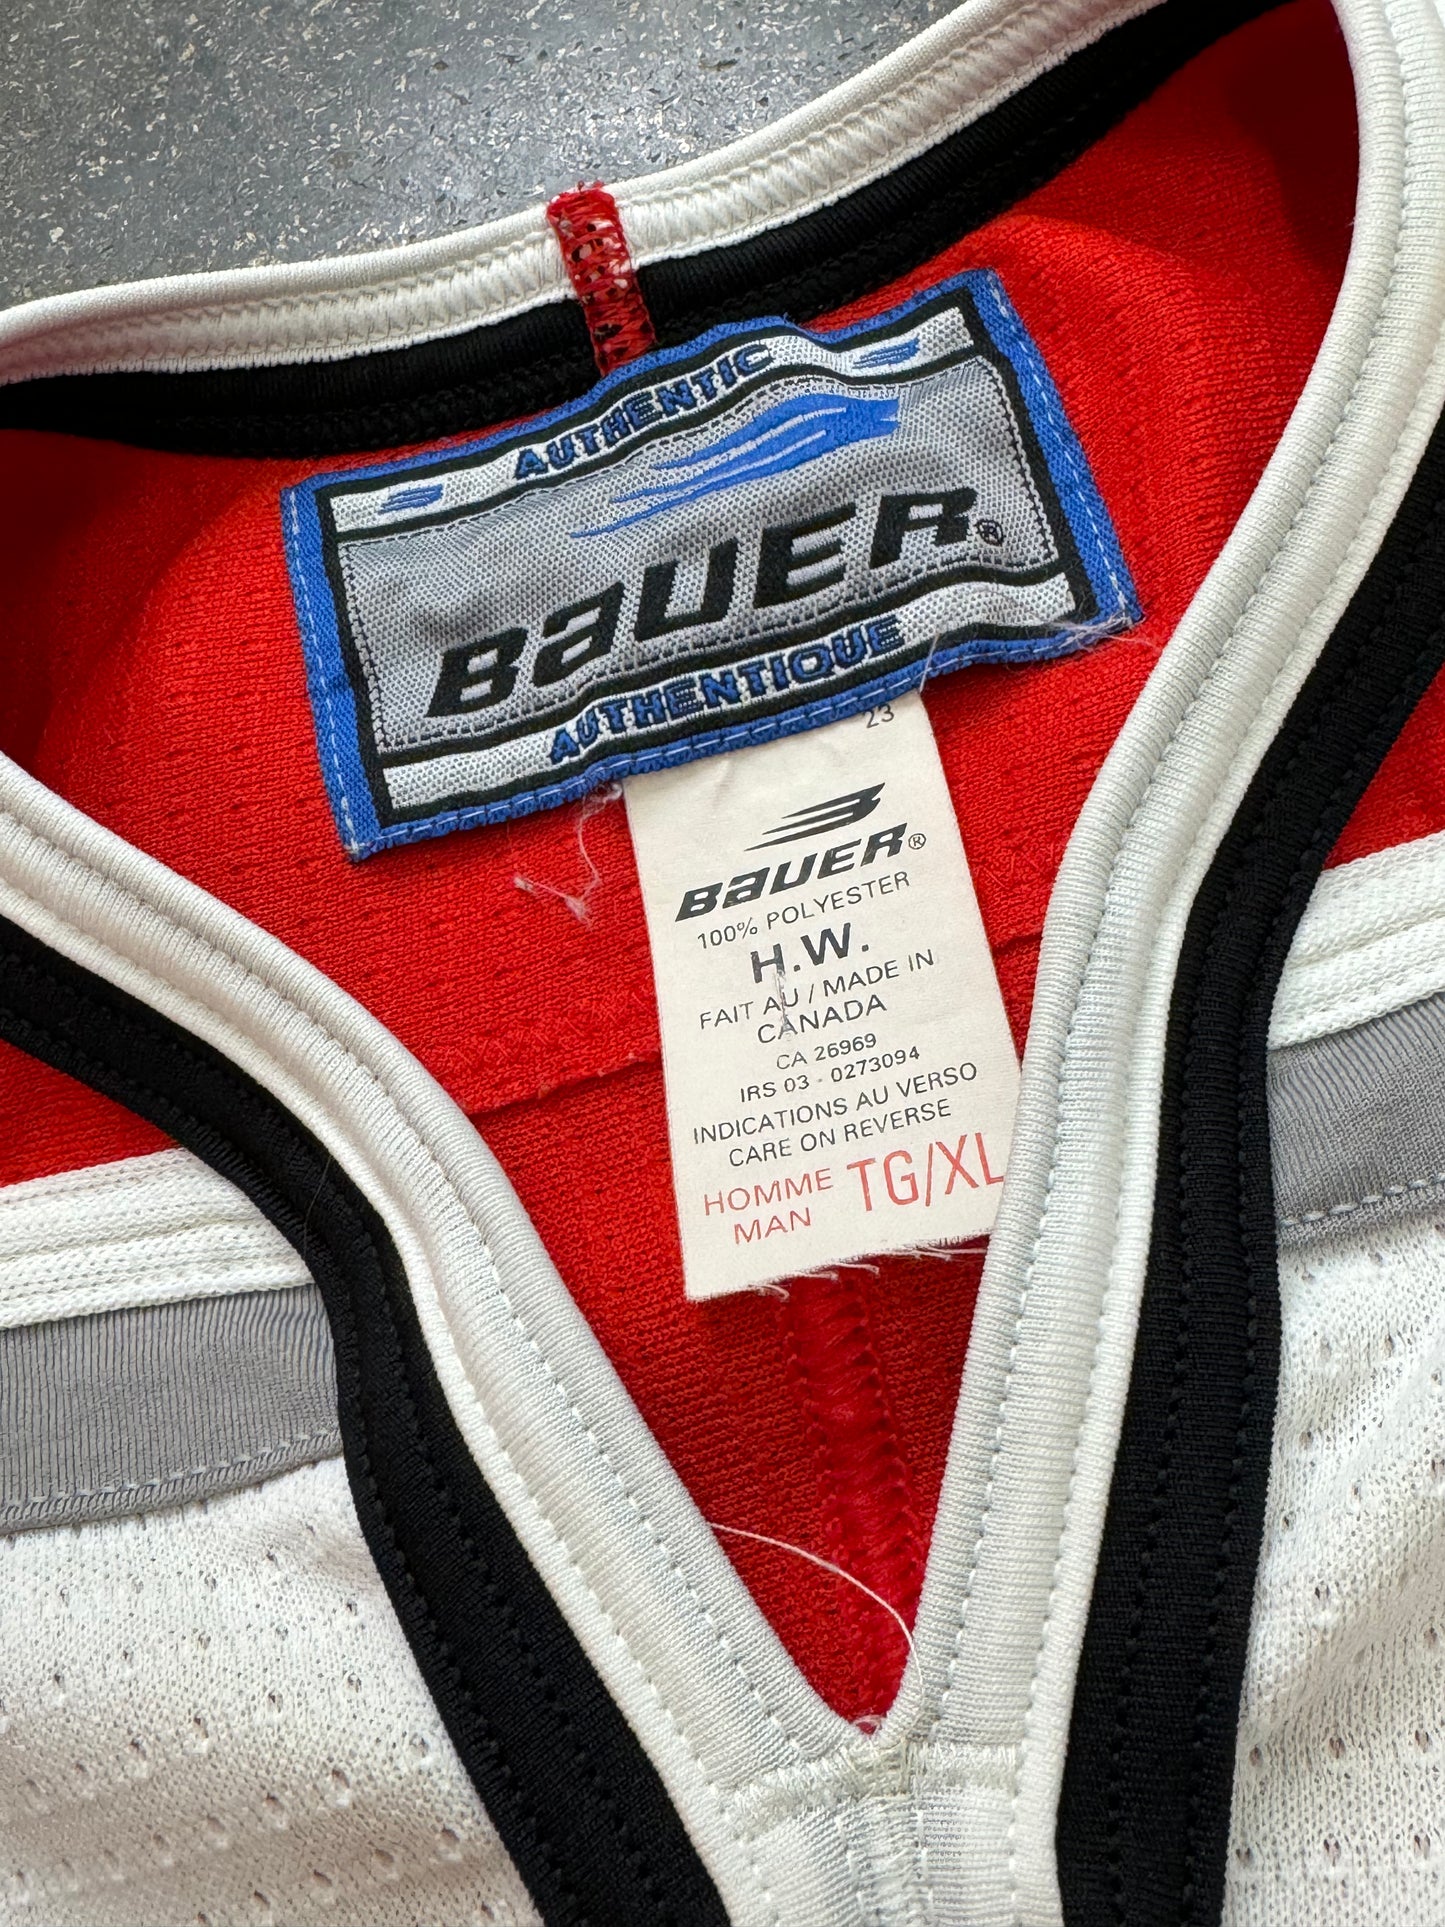 Vintage Team Canada Bauer Hockey Jersey Size